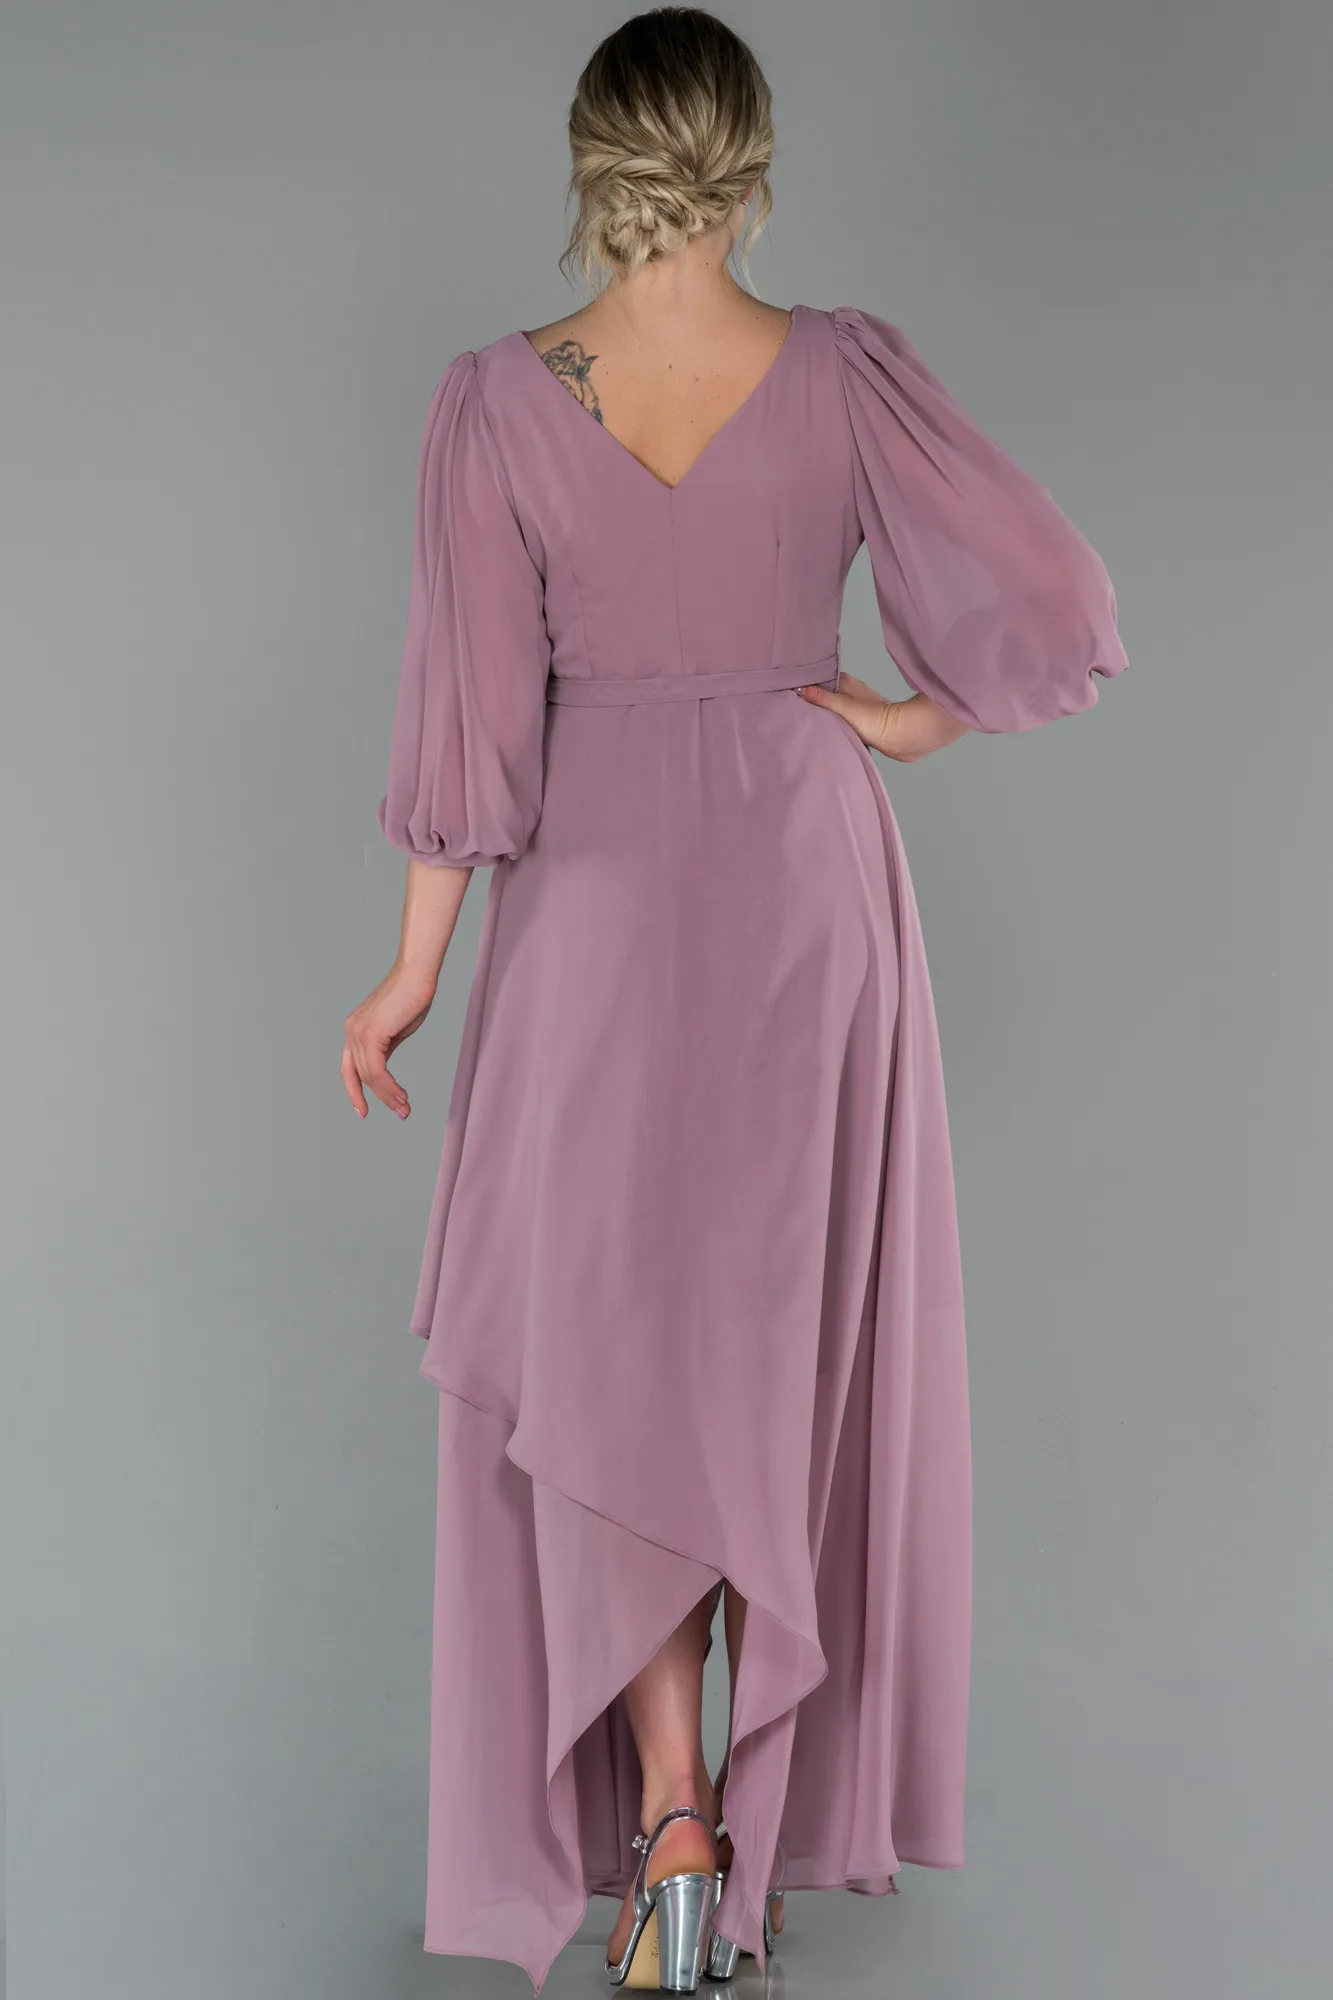 Rose Colored-Long Chiffon Invitation Dress ABU1729